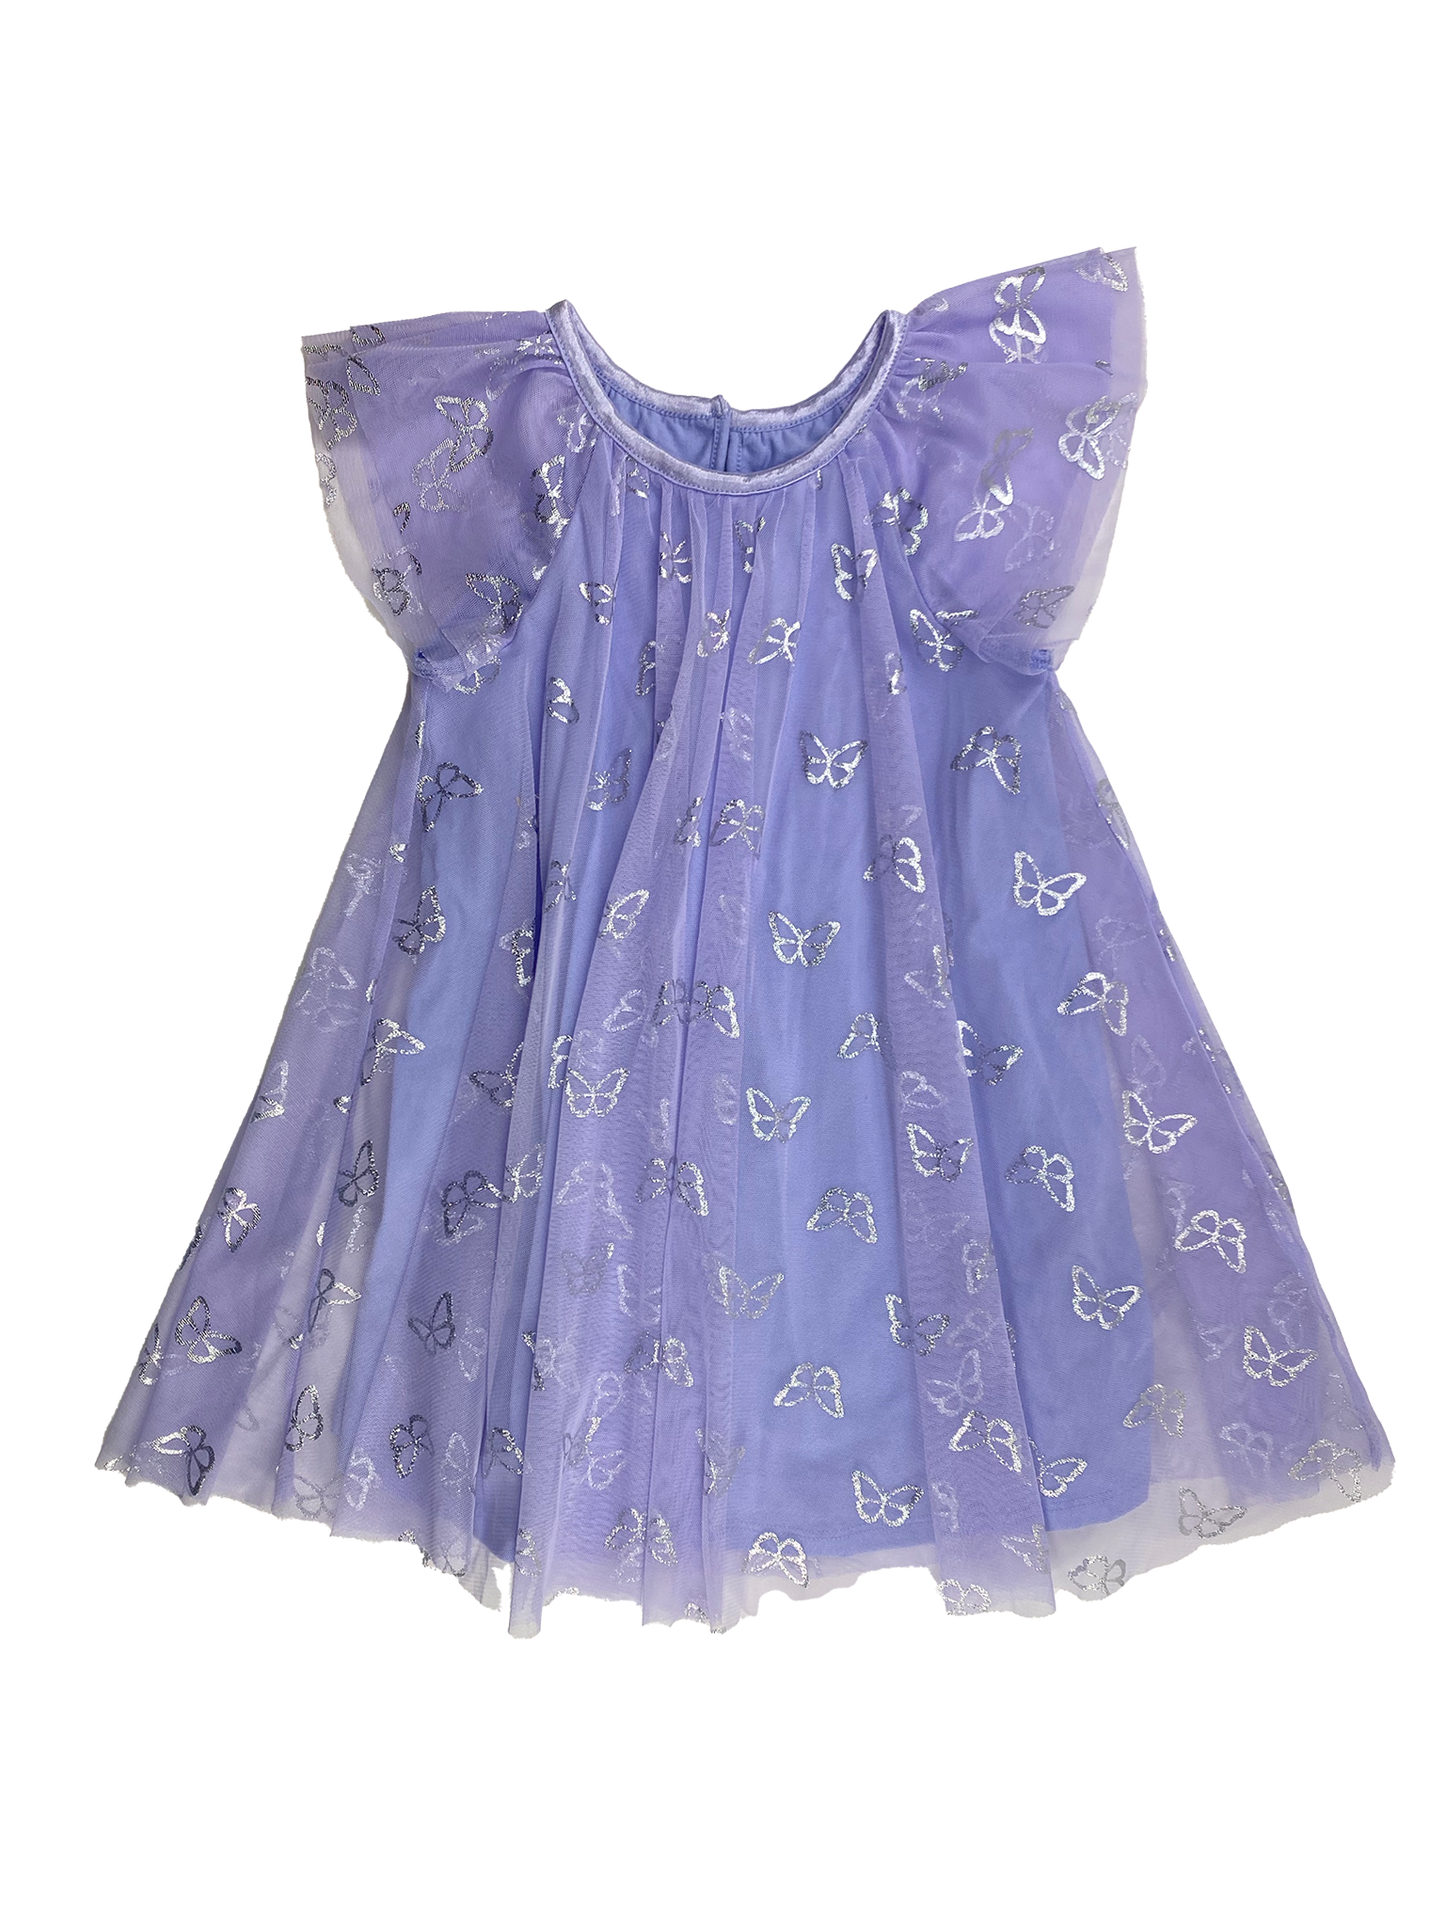 Joe Fresh Purple Tulle Dress with Butterflies 4T